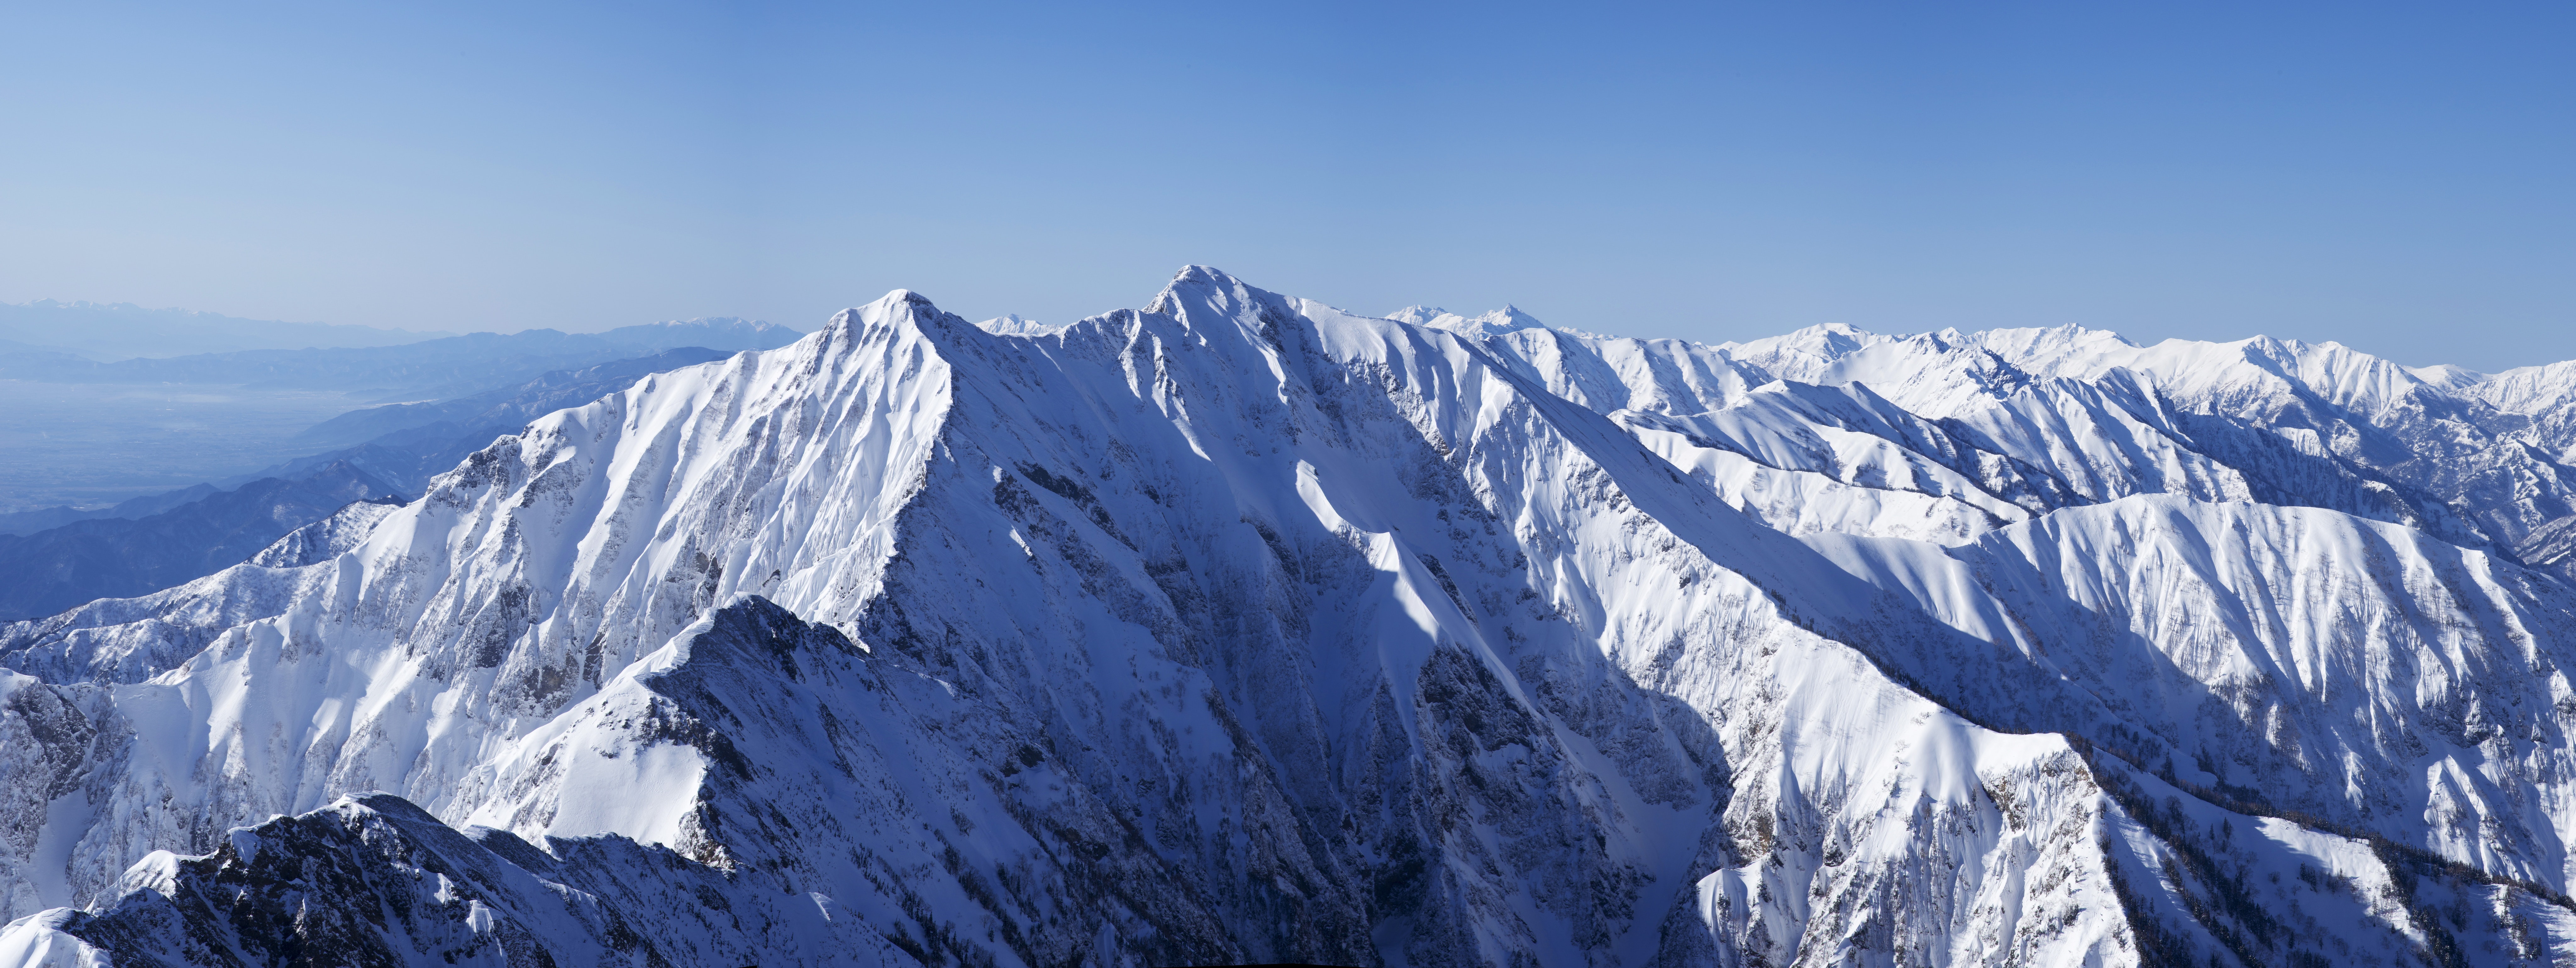 1000+ Beautiful Mountain Range Photos · Pexels · Free Stock Photos